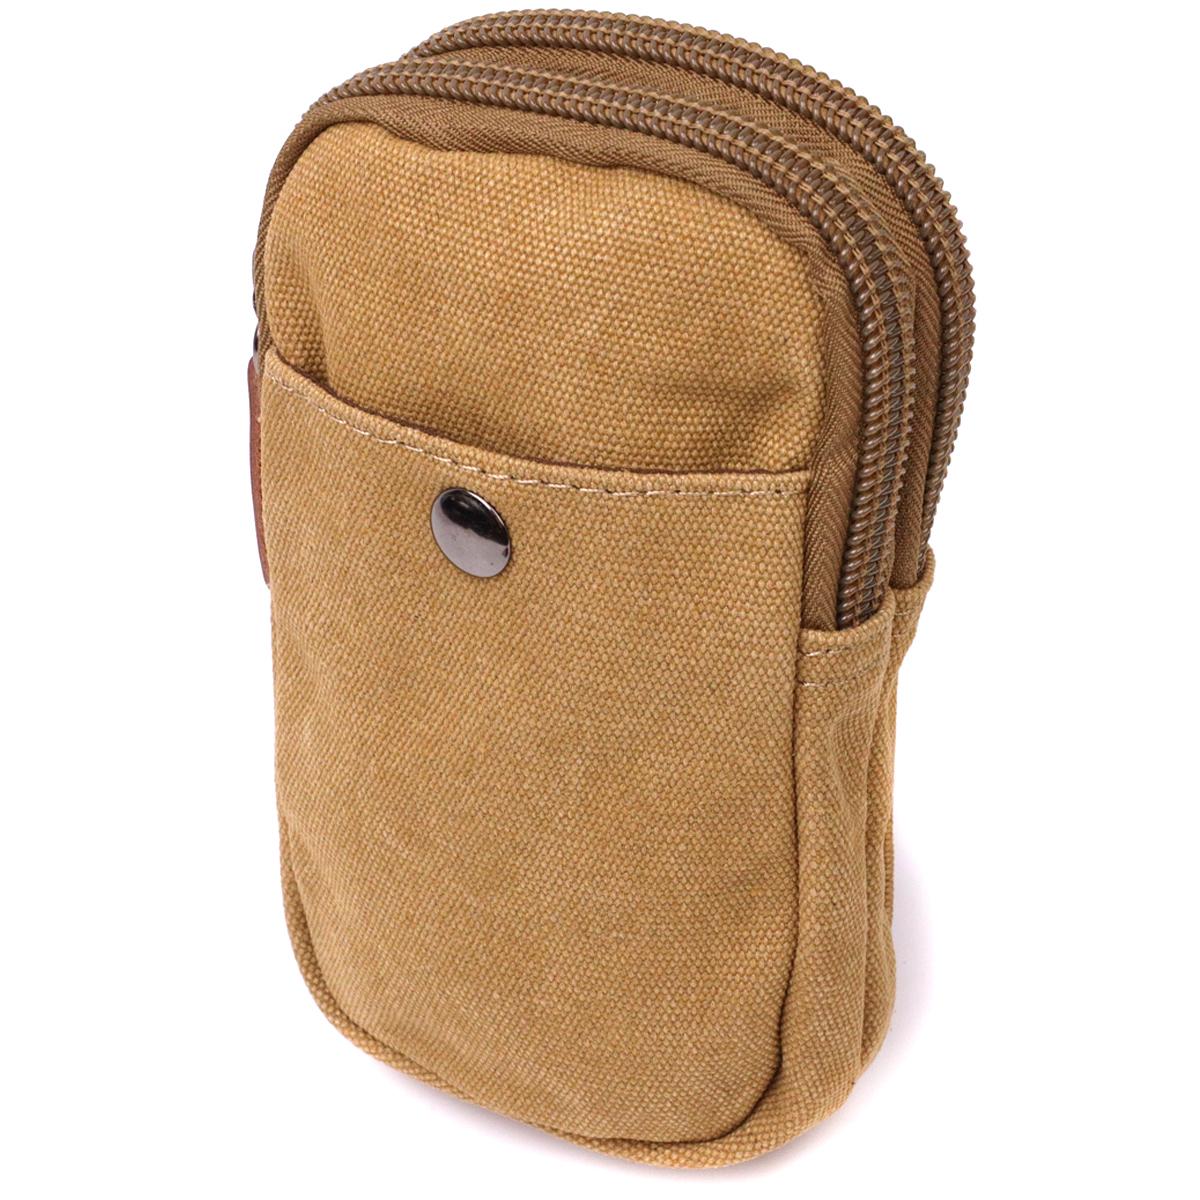 Мужская сумка-чехол на пояс Vintage Bag 22227 из текстиля с металлическим карабином Песочный